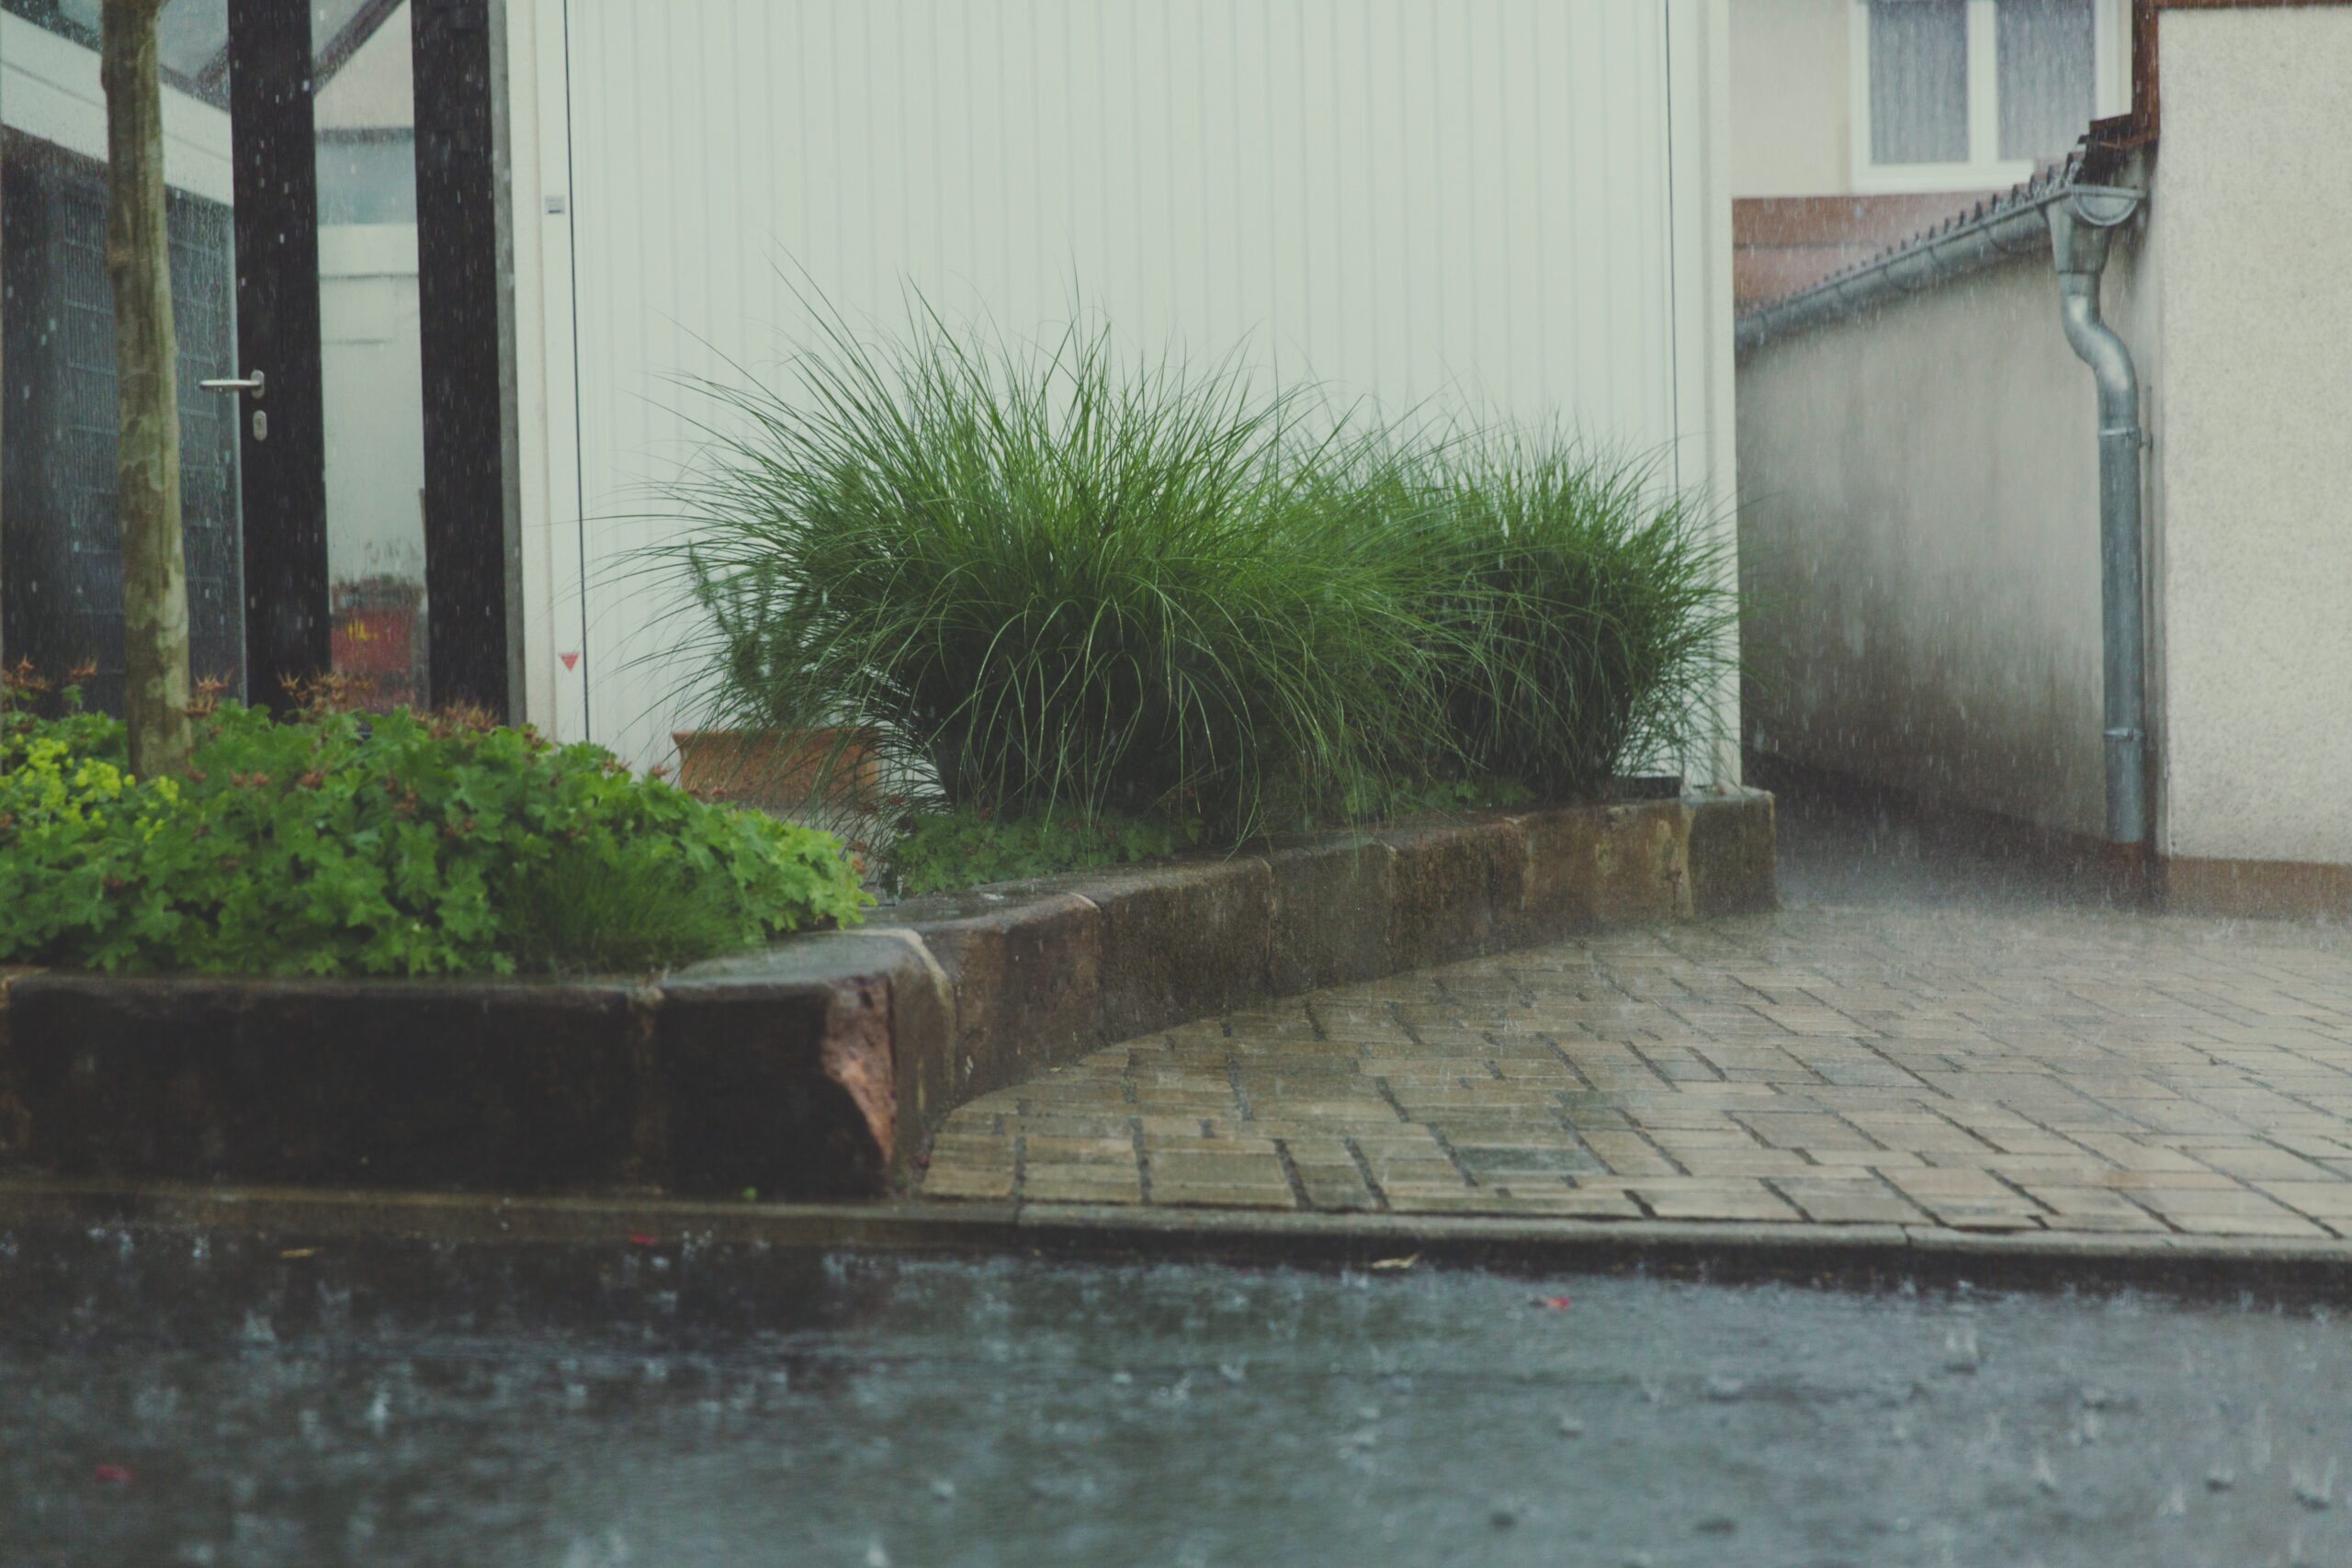 Raining outside a home